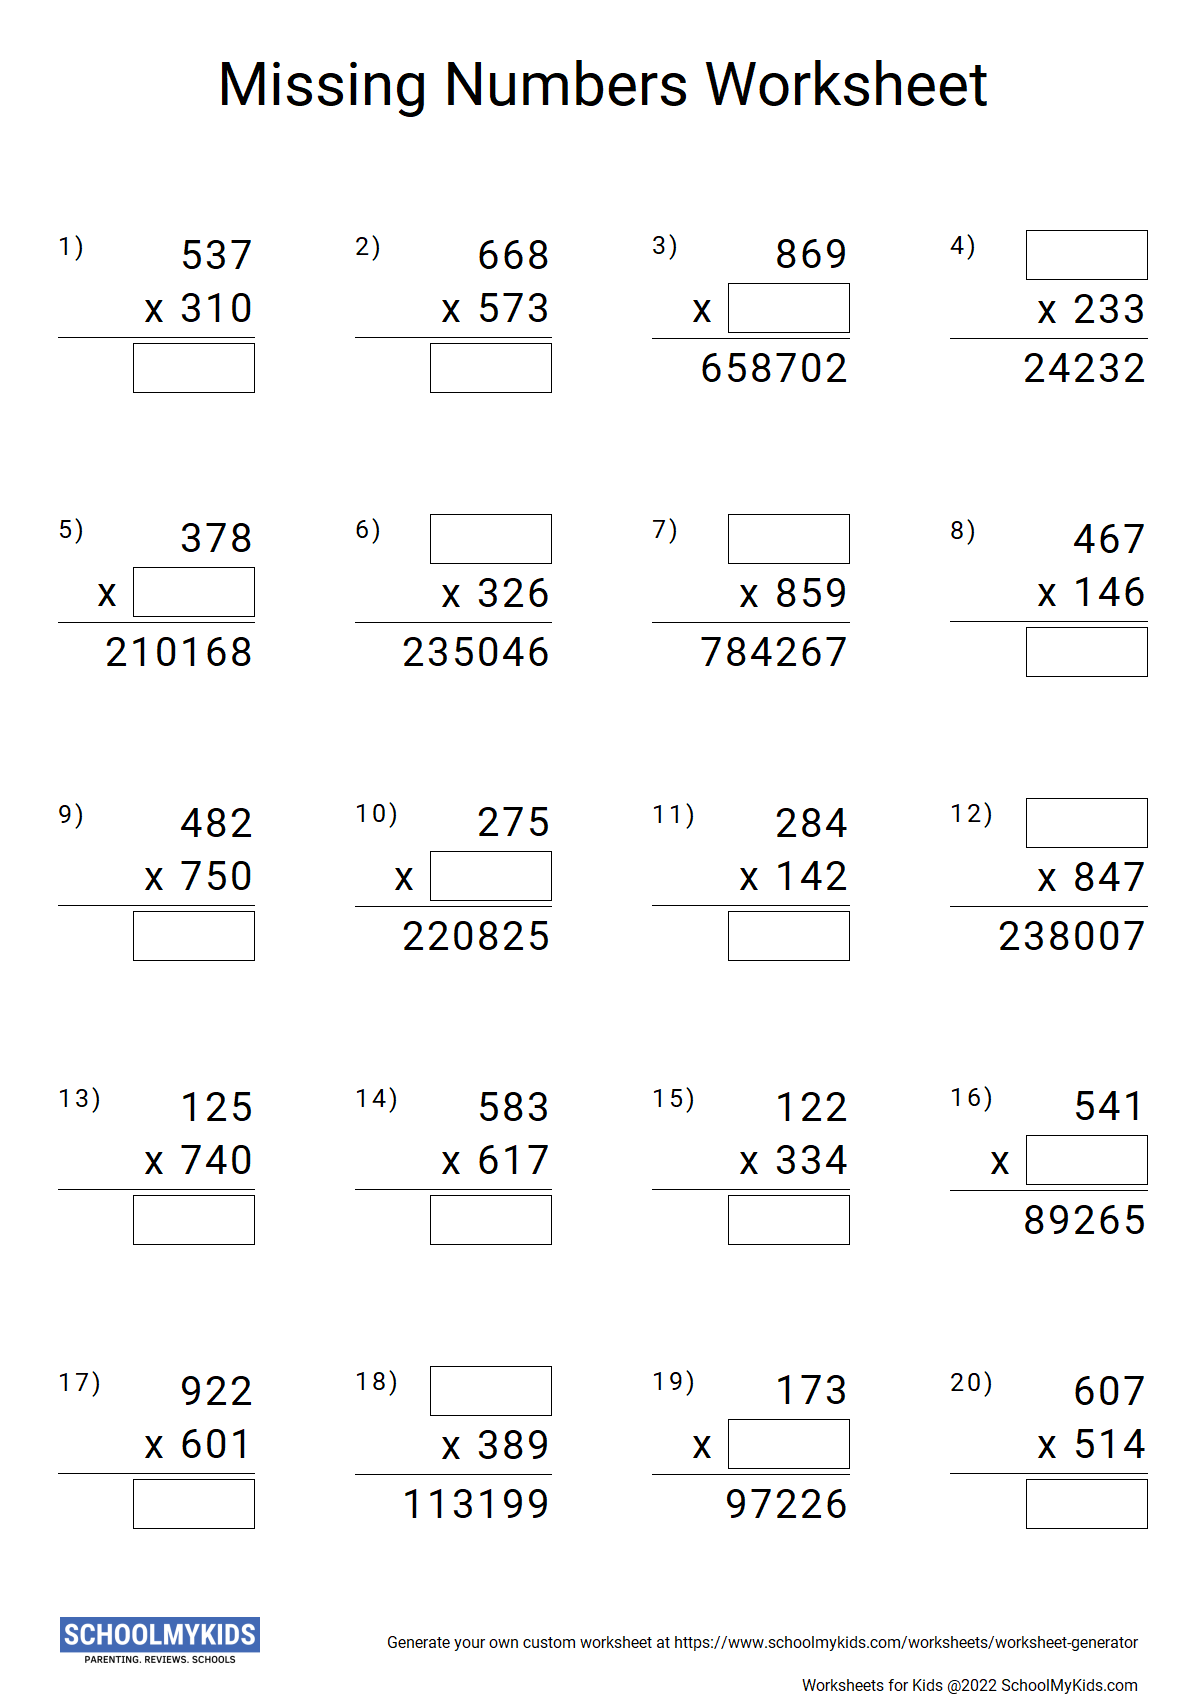 multiplication-missing-numbers-worksheet-generator-math-worksheet-creater-schoolmykids